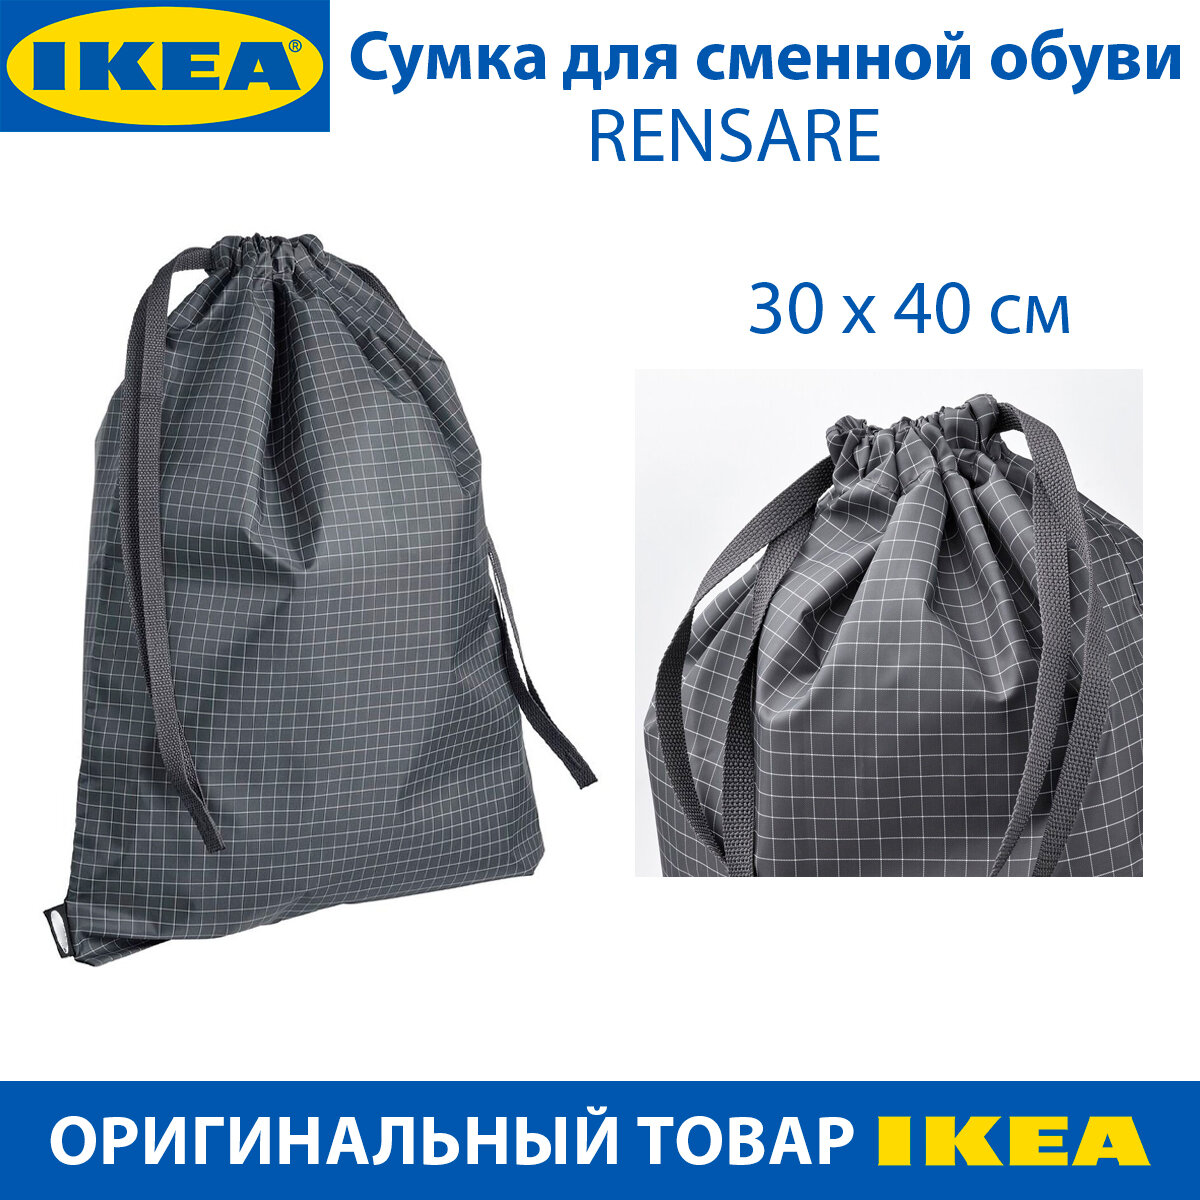 Сумка для сменной обуви IKEA - RENSARE (ренсаре) черная в клетку 30х40 см 1шт